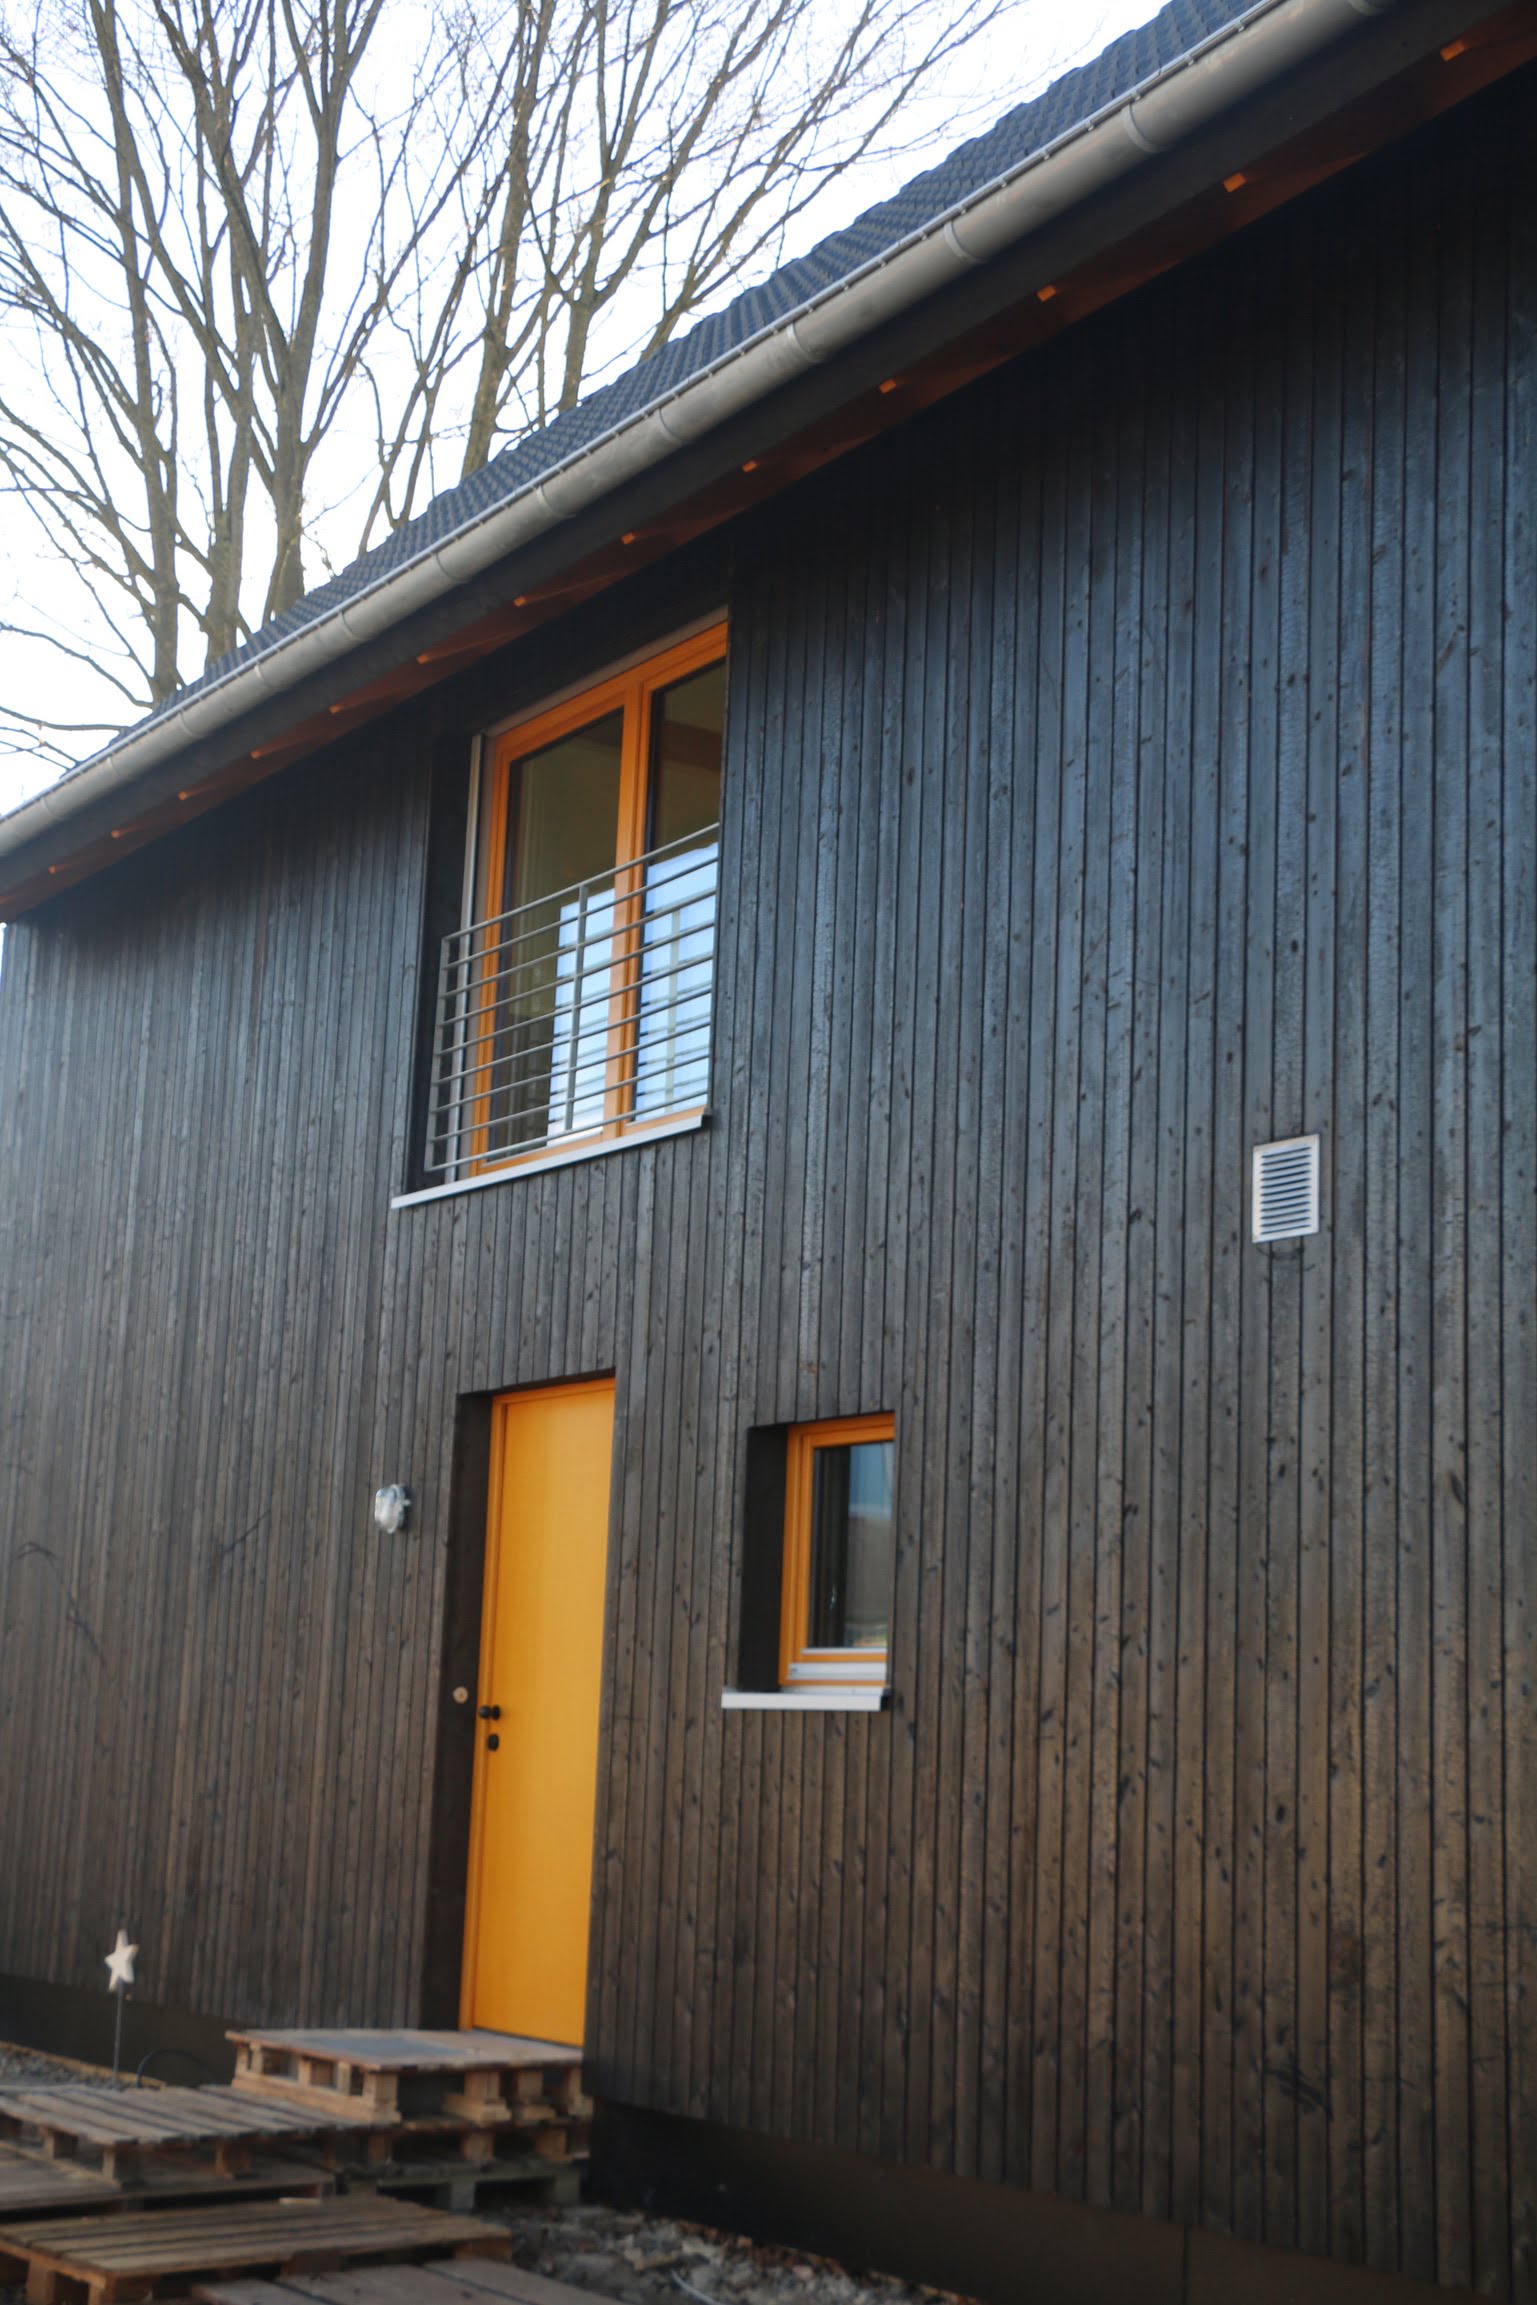 Eingang eines Holzhauses von Wohnbehagen mit einer dunklen Fassade und einer naturfarbenen Haustür.